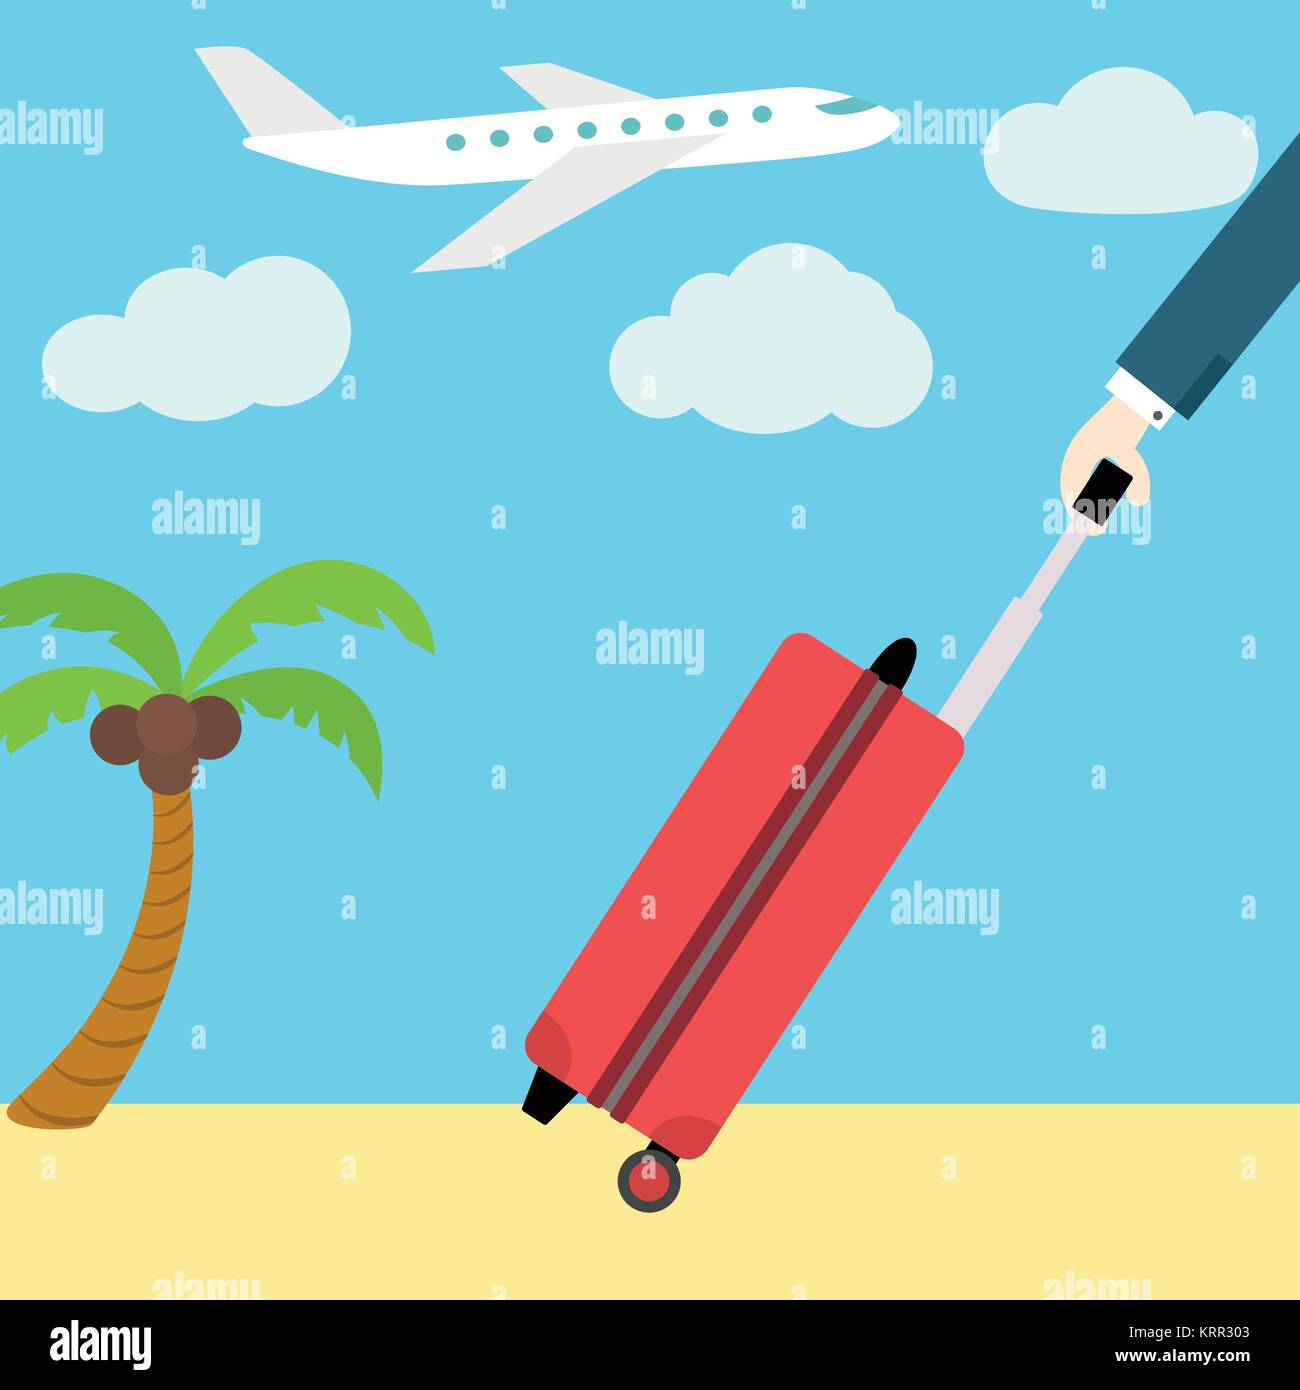 Vektor Flachbild-Fahne. In den Urlaub fahren. Ein Mann mit einem Koffer auf Rädern. Flugzeug und Palmen im Hintergrund. Stock Vektor